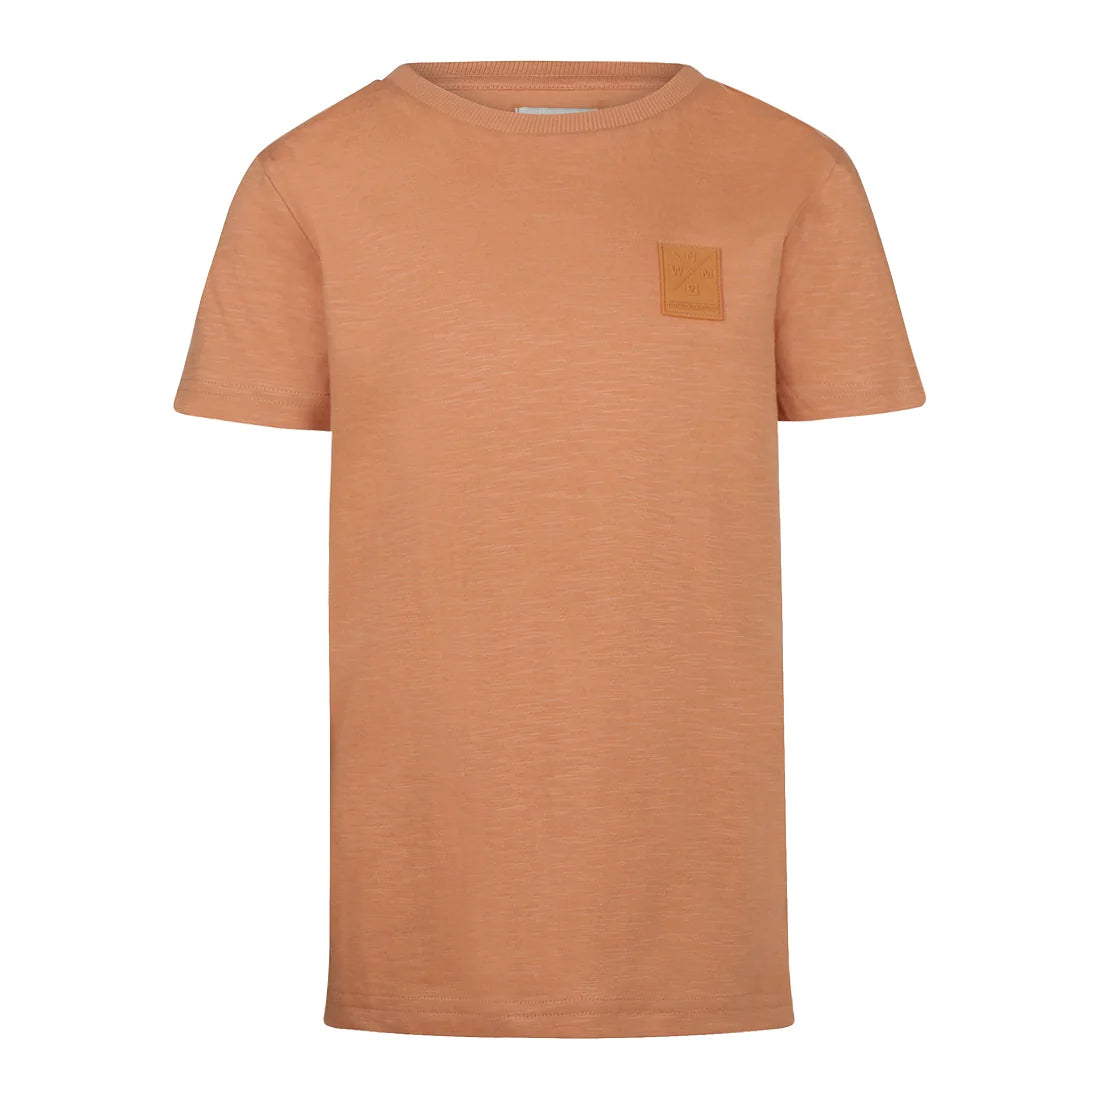 Jongens T-shirt ss van No Way Monday in de kleur Faded cognac in maat 164.